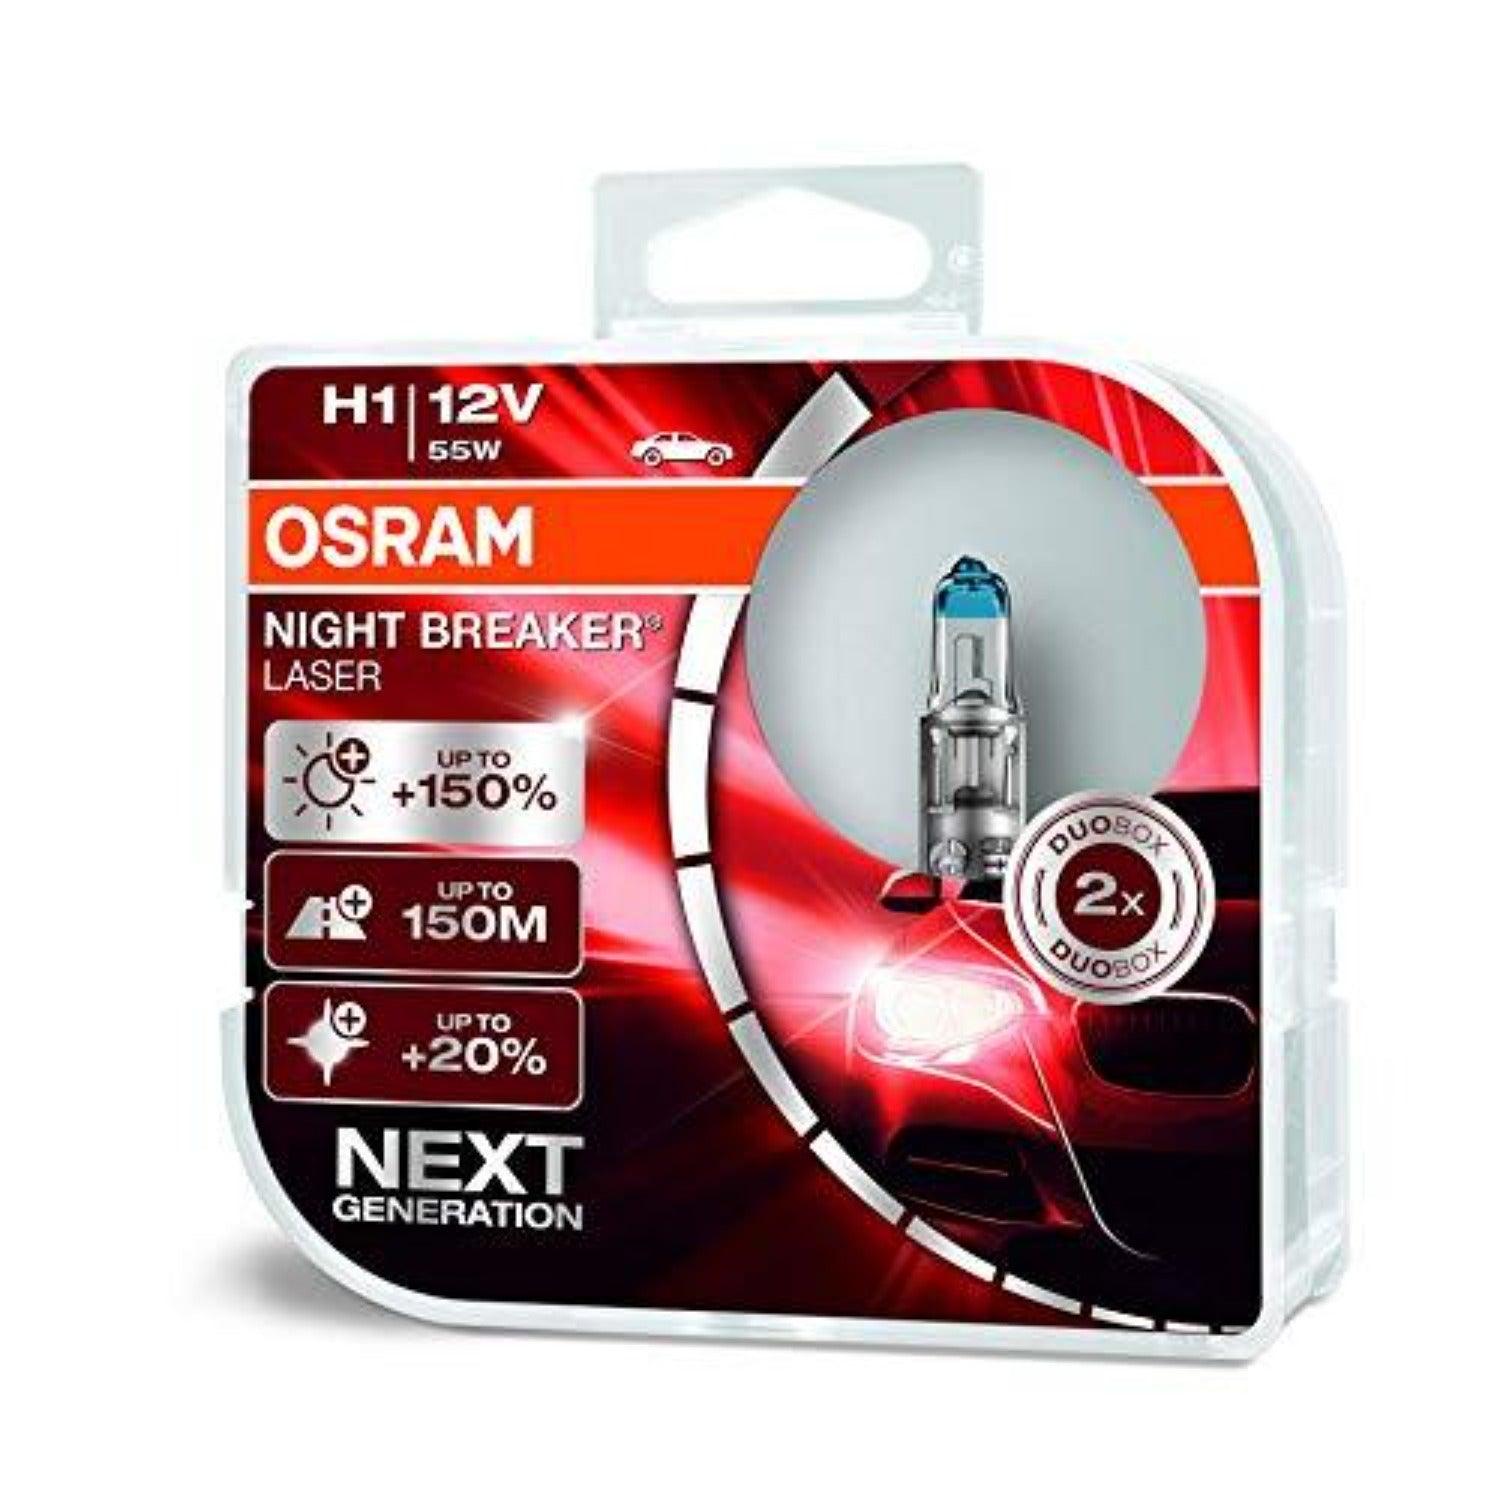 64150NL-HCB OSRAM NIGHT BREAKER LASER next Generation H1 12V 55W